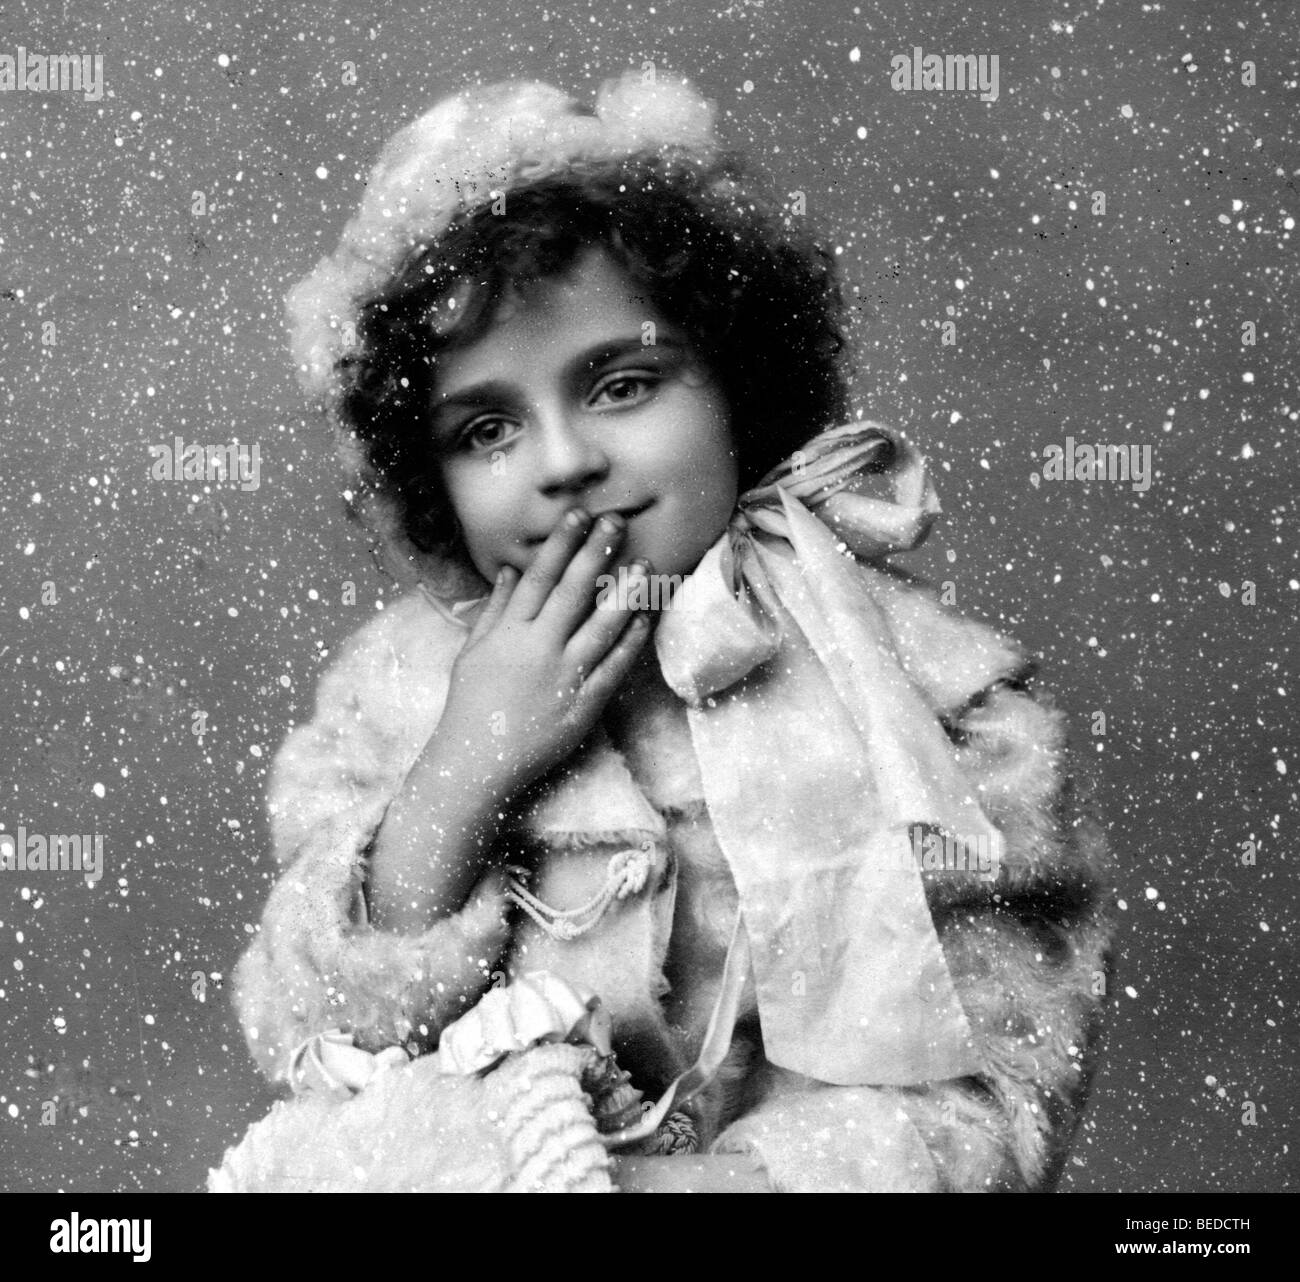 Photographie historique de l'enfant, en hiver, vers 1912 Banque D'Images